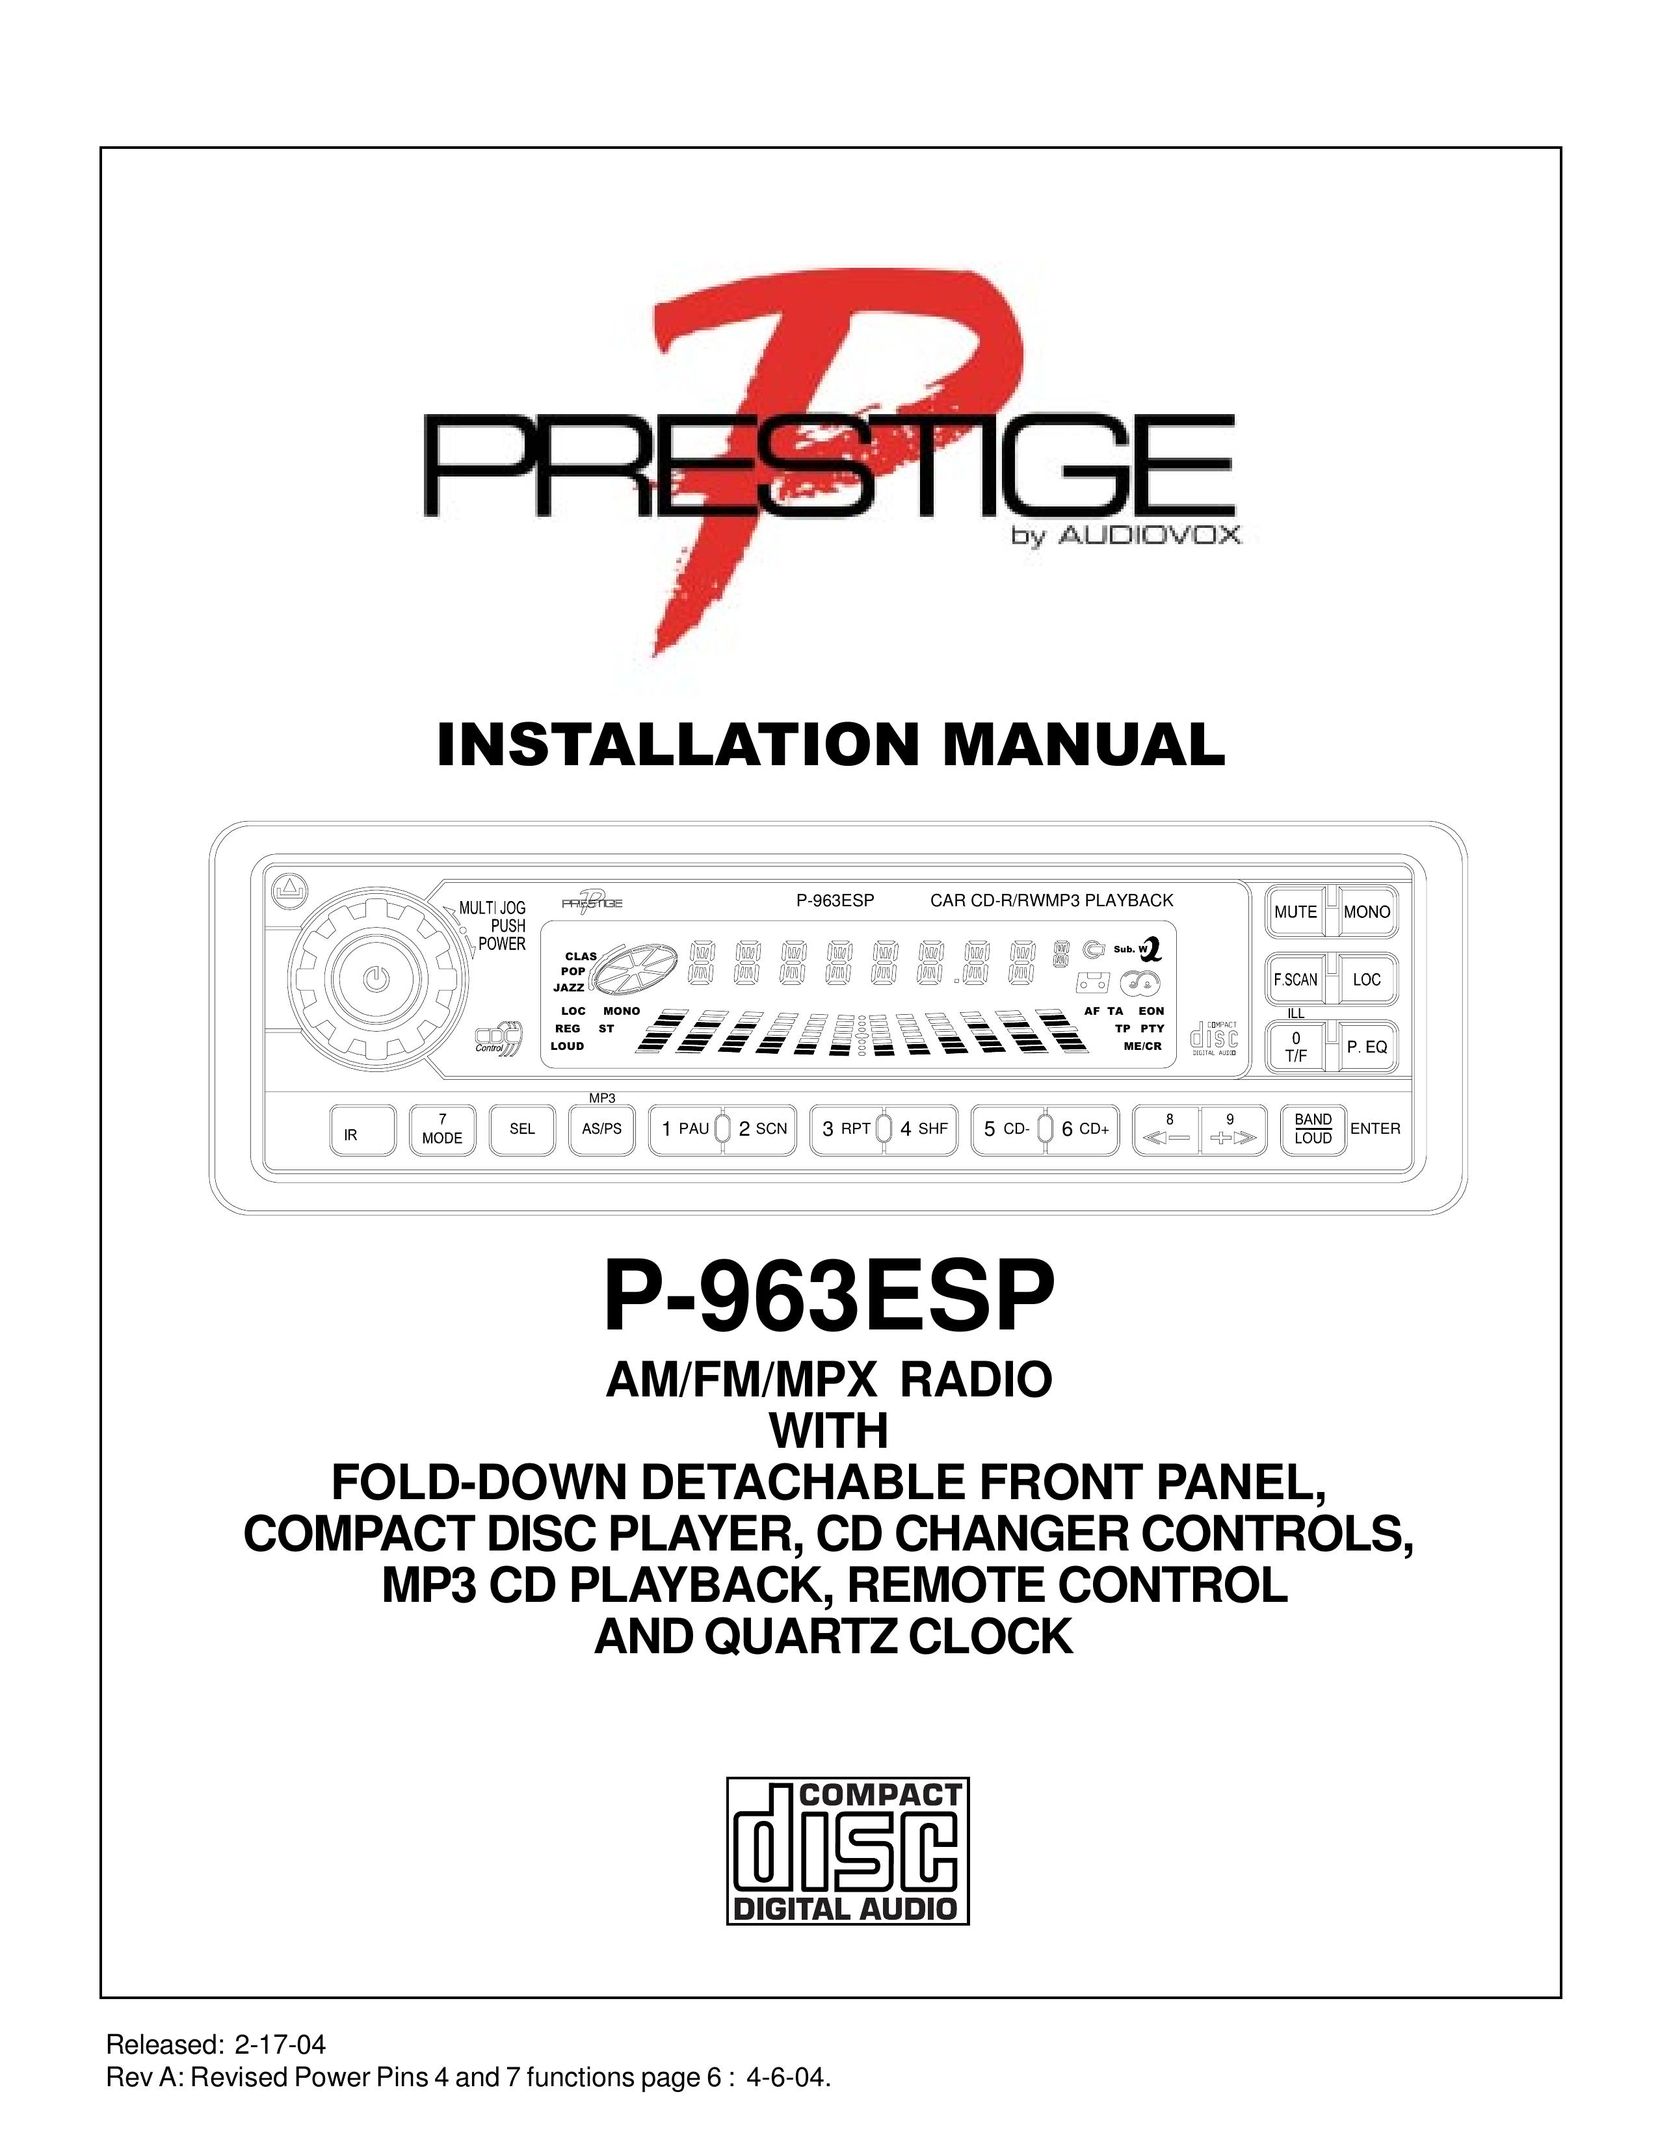 Audiovox P-963ESP Radio User Manual